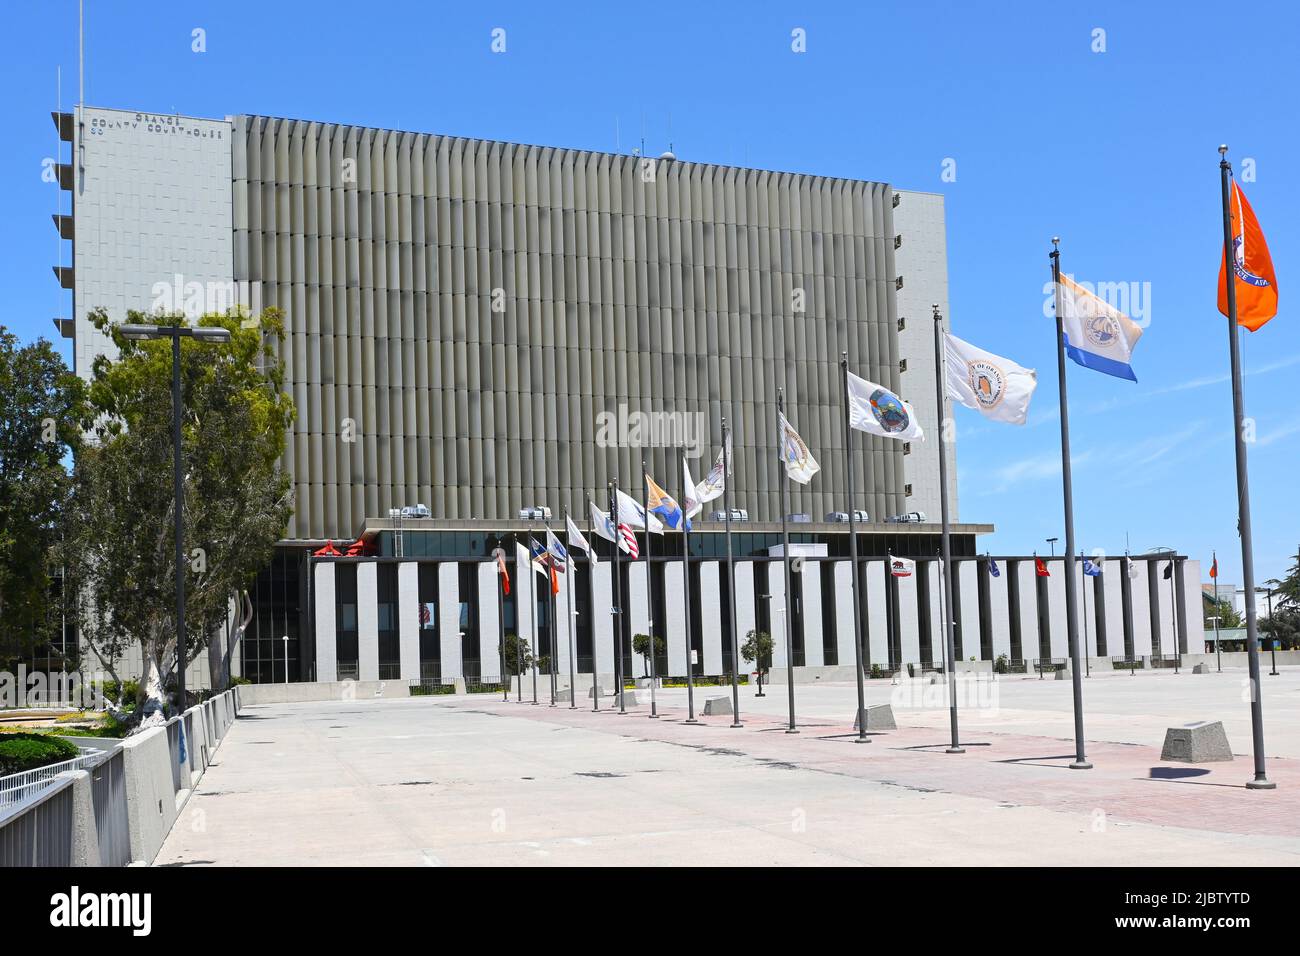 SANTA ANA, KALIFORNIEN - 2. JUNI 2022: Das Orange County Courthouse und die Stadtflaggen im Civic Center Plaza. Stockfoto